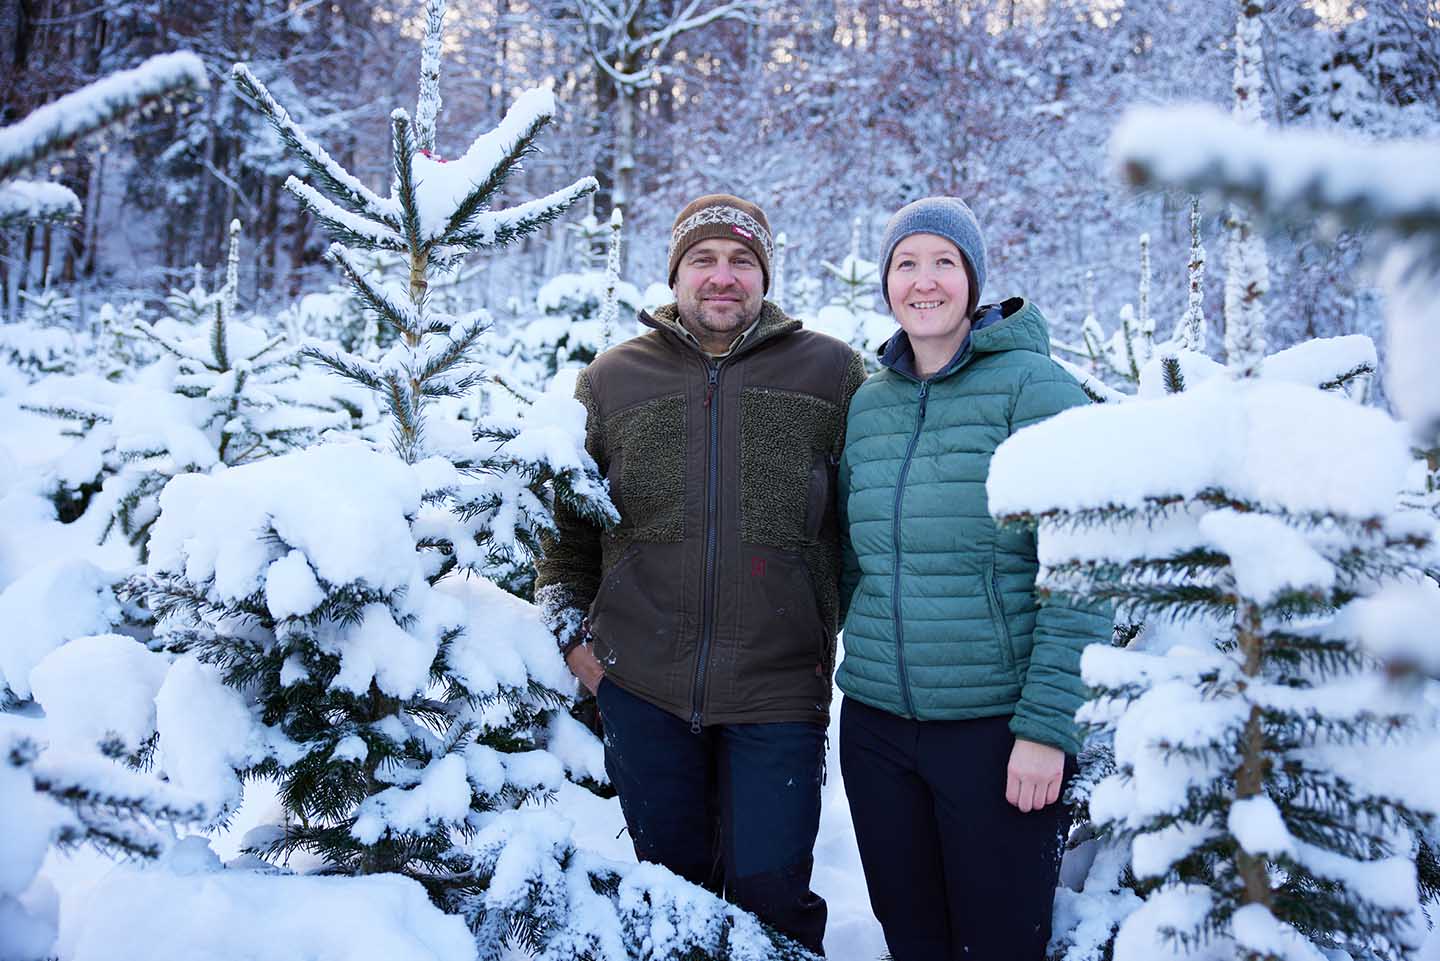 Dünser Karin Und Markus Stehen In Ihrer Schneebedeckten Christbaum Kultur Zwischen Bäumen